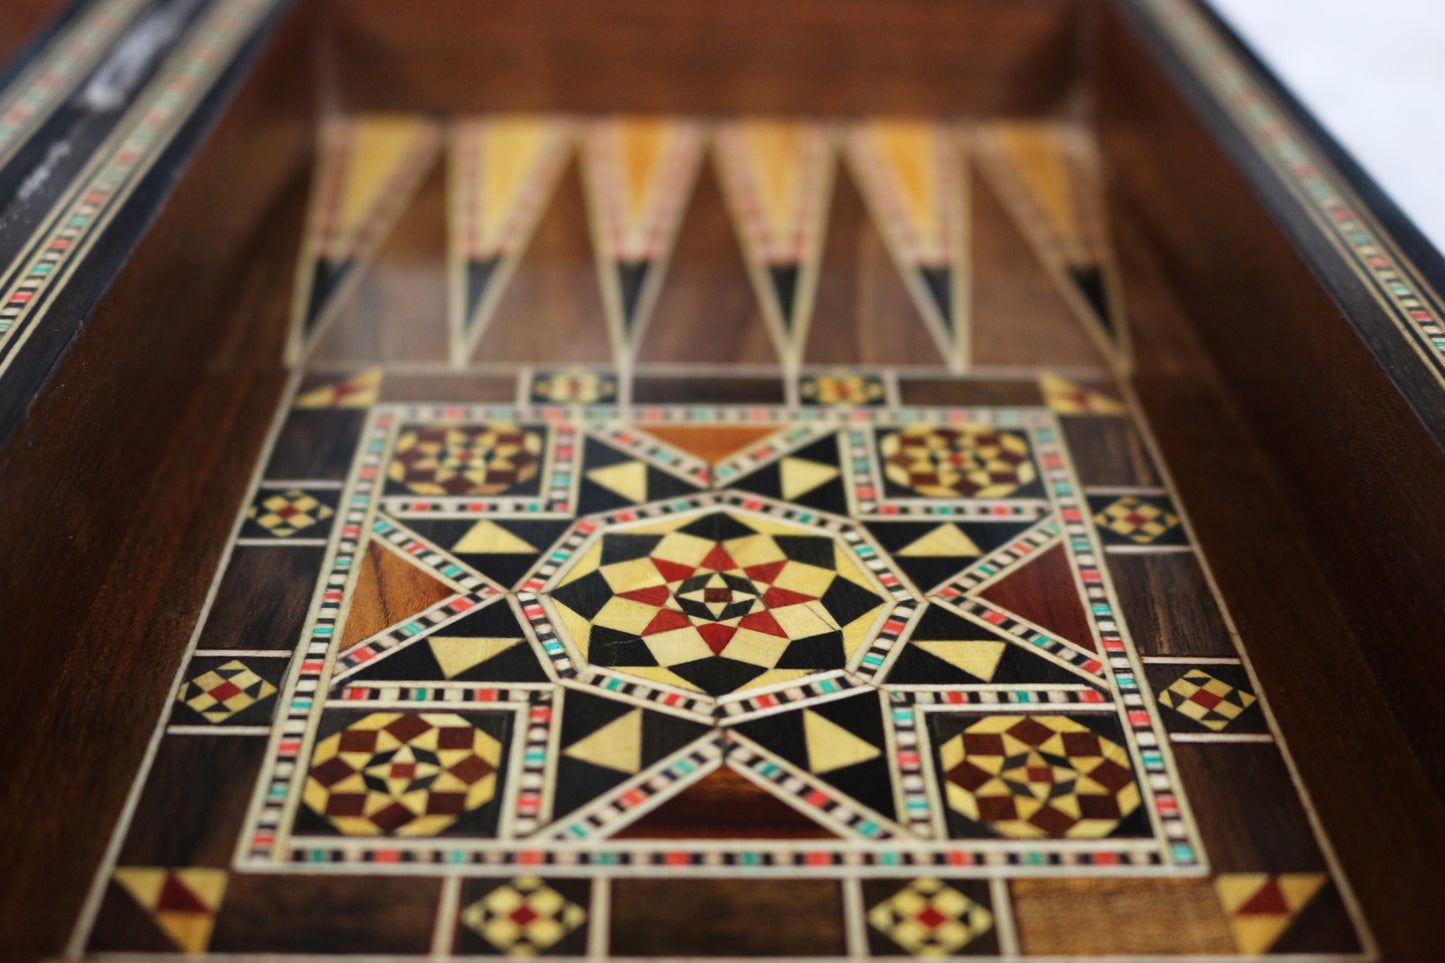 Neu 30 x 30 cm Holz Backgammon/Schachspiel/Dama Brett  BT 302 mit Holz Backgammon Steine